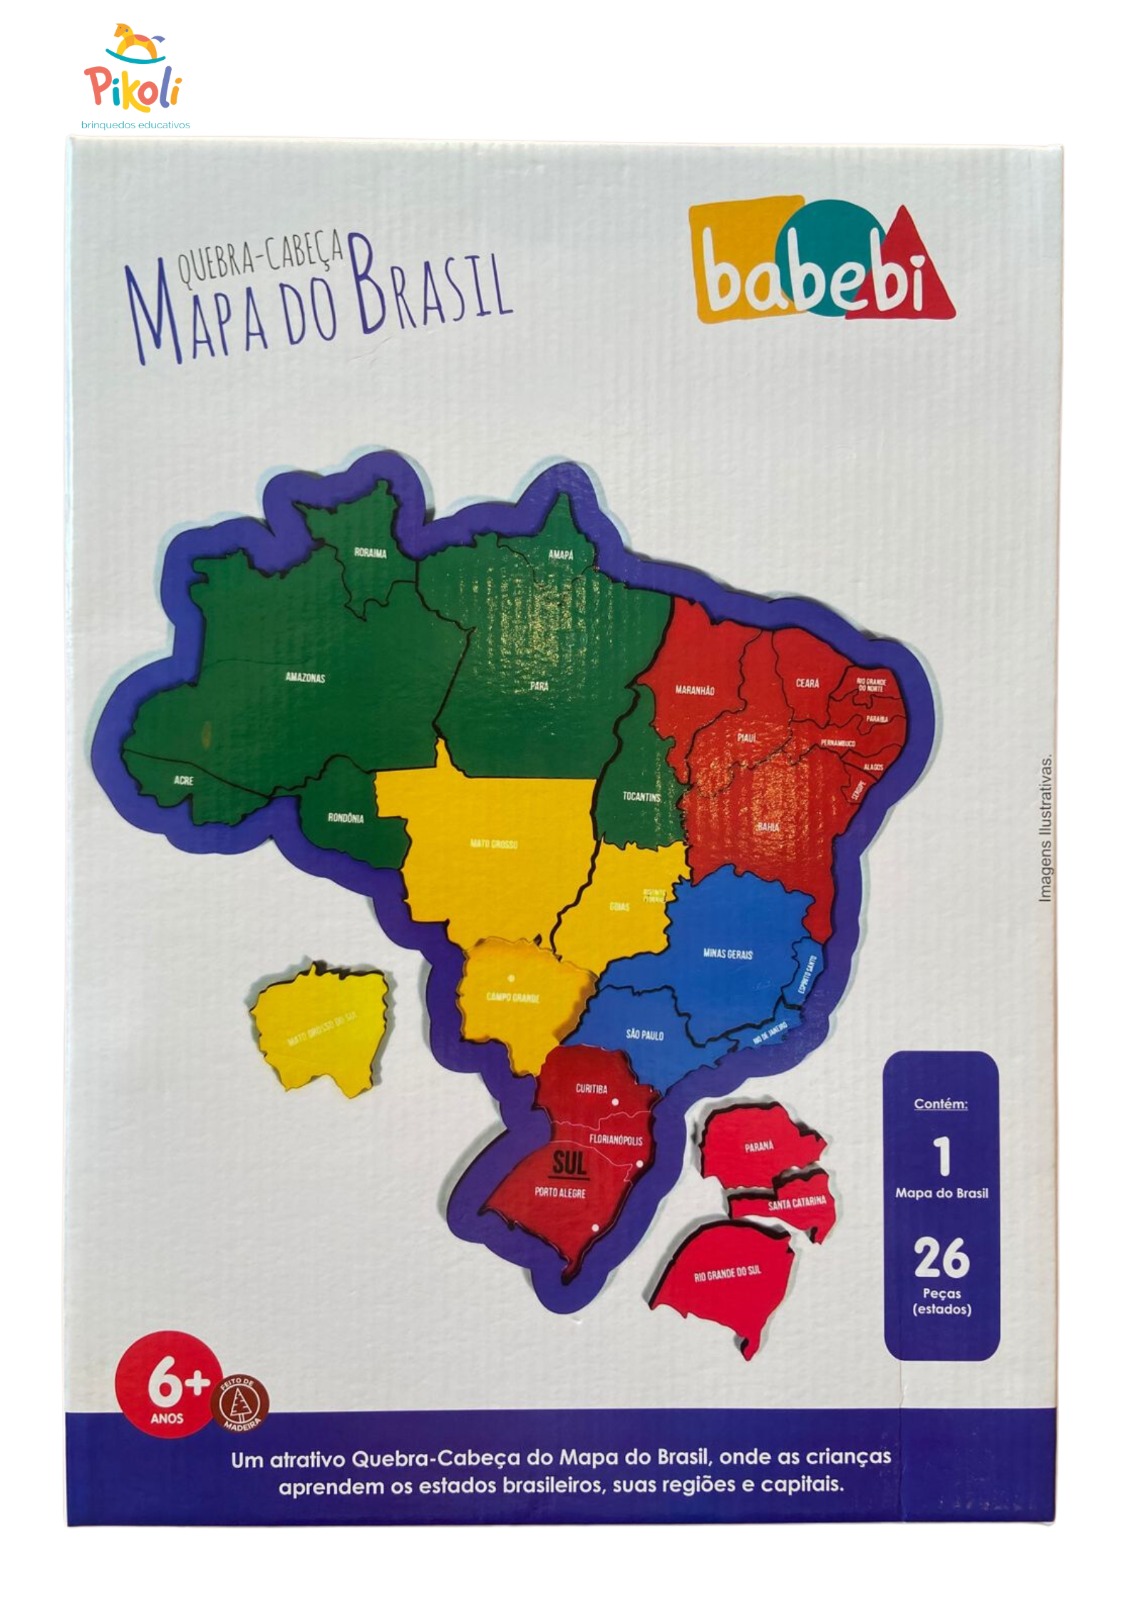 Joguinho De Bolsa - Quebra Cabeça - BaBeBi - Pikoli Brinquedos Educativos